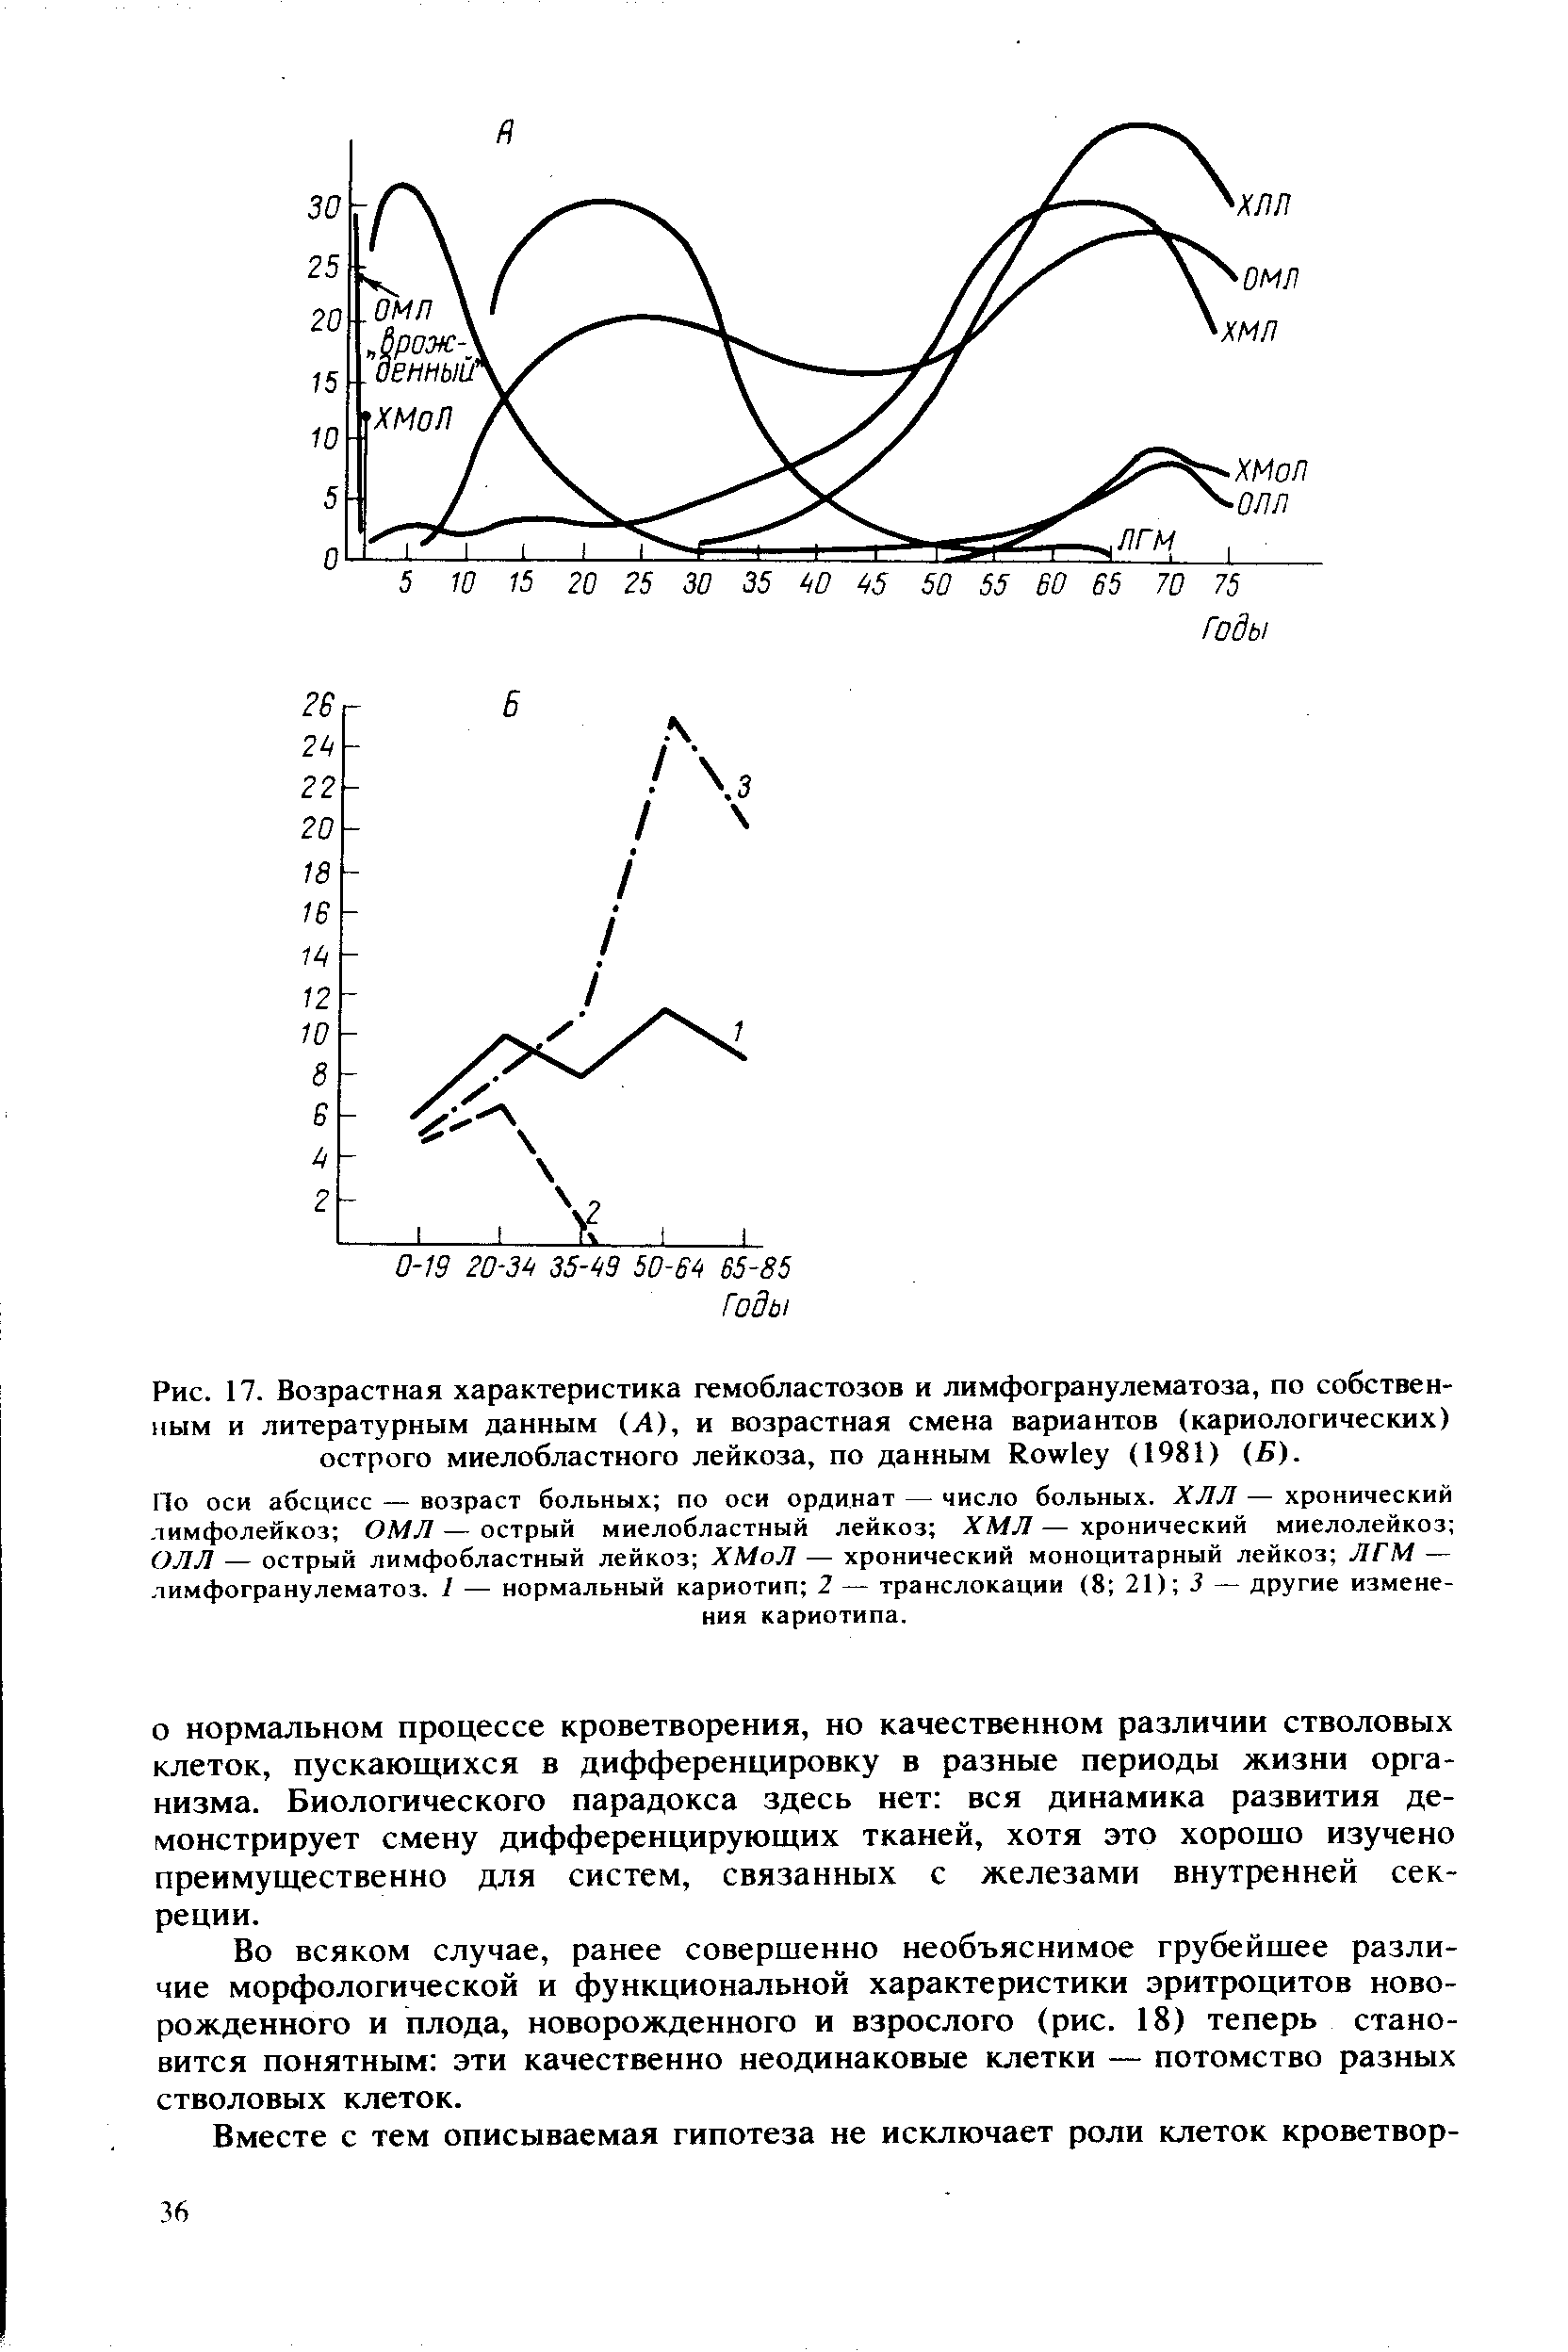 Рис. 17. Возрастная характеристика гемобластозов и лимфогранулематоза, по собственным и литературным данным (Л), и возрастная смена вариантов (кариологических) острого миелобластного лейкоза, по данным R (1981) (Б).